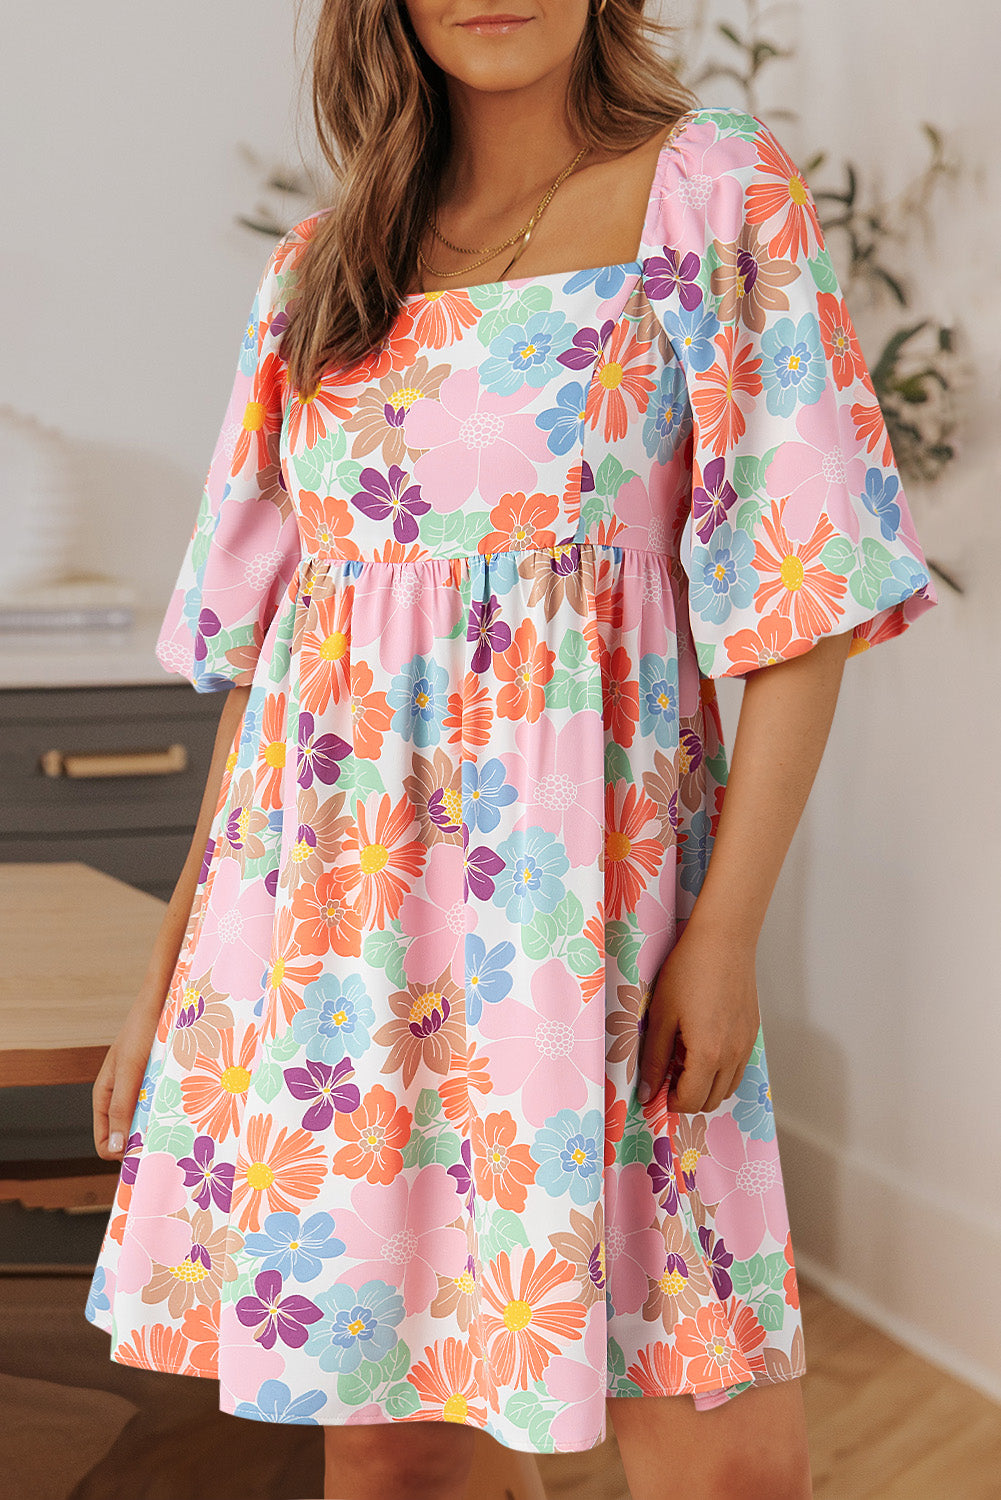 TEEK - Multicolor Half Sleeve Mini Dress DRESS TEEK Trend   